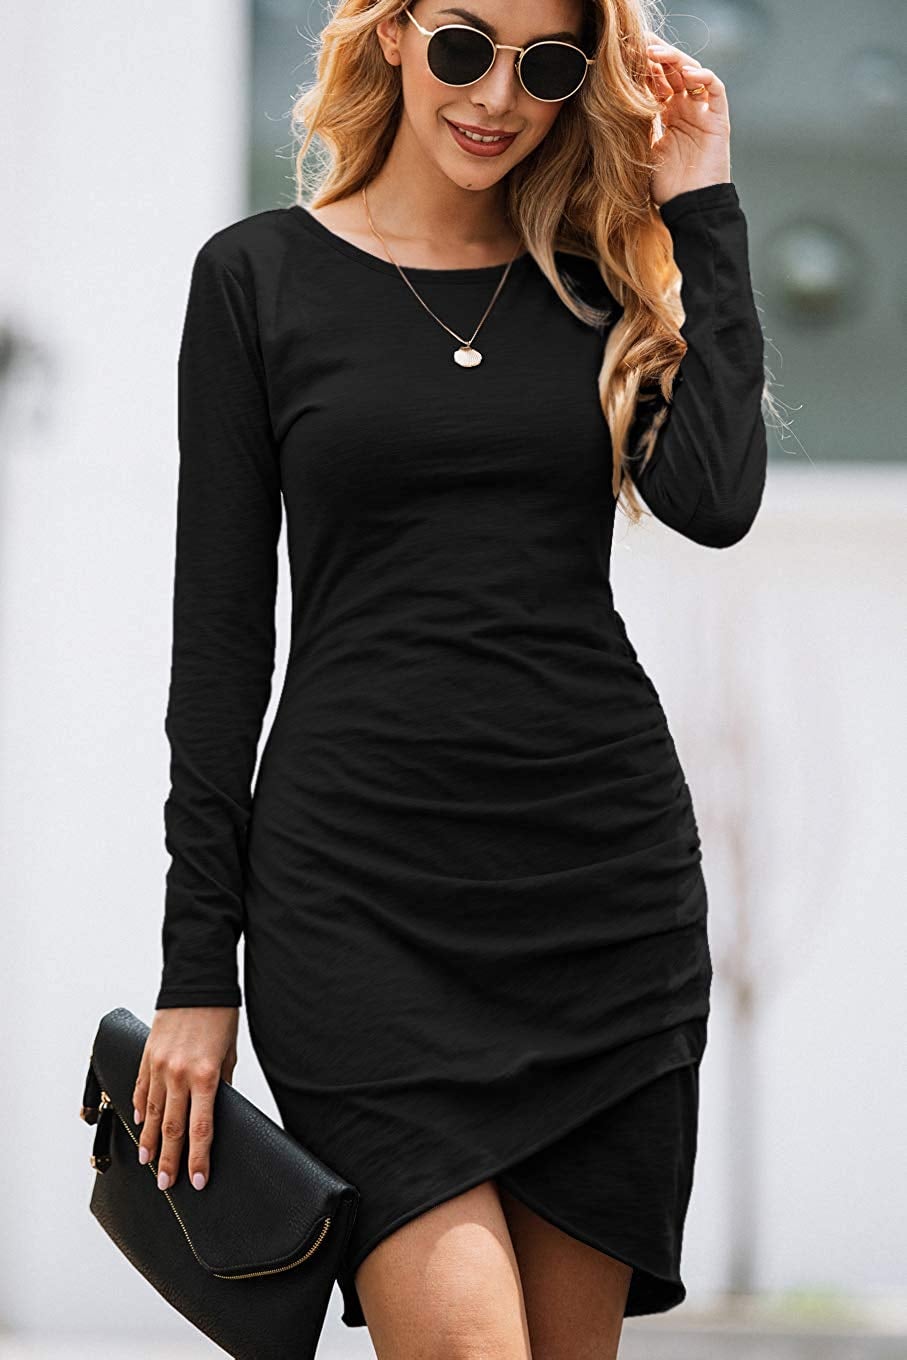 Black Dresses for Women